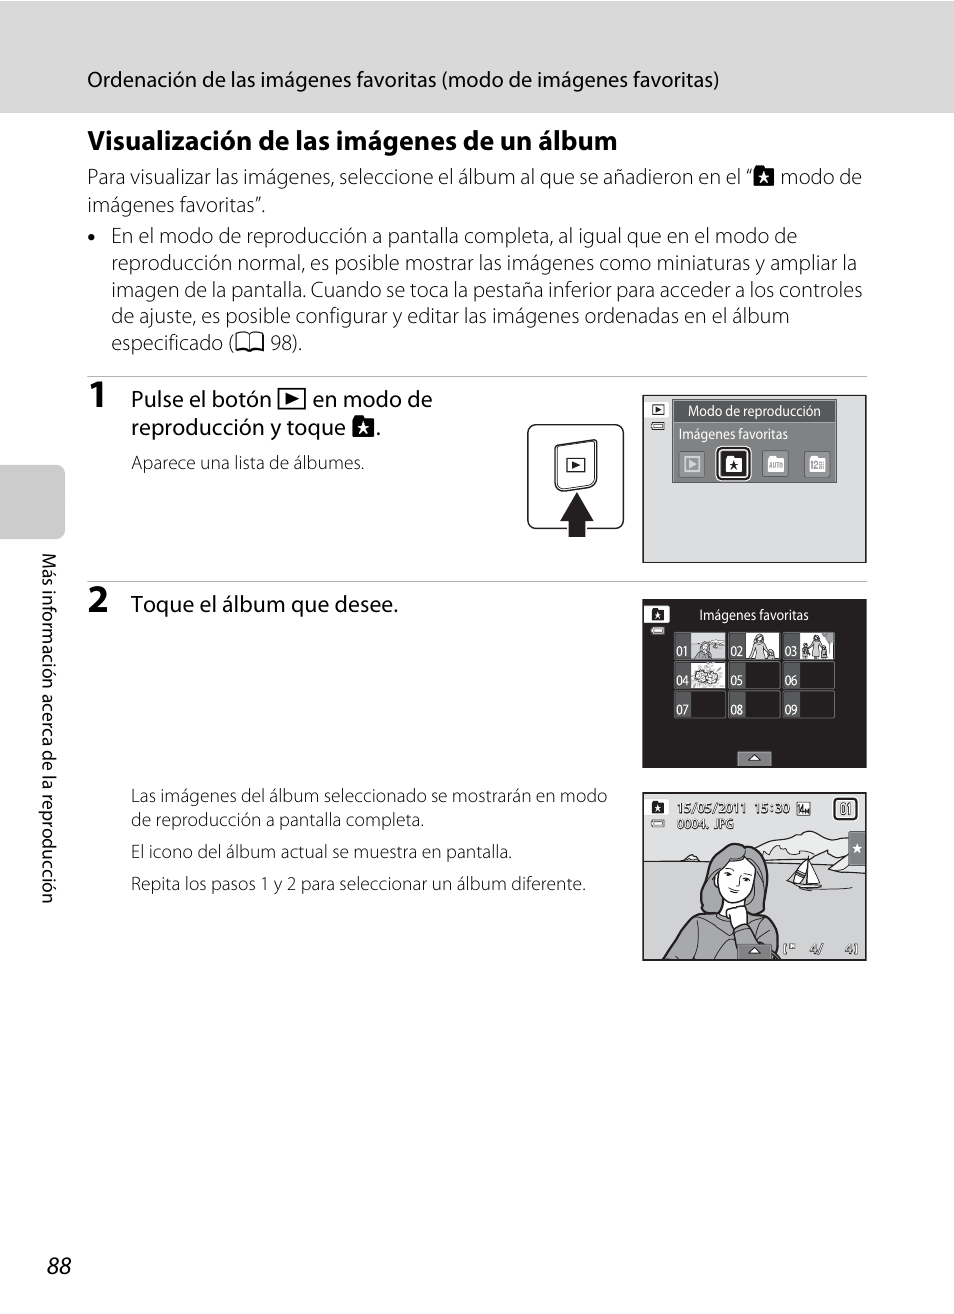 Visualización de las imágenes de un álbum, Pulse el botón c en modo de reproducción y toque h, Toque el álbum que desee | Nikon Coolpix S4100 Manual del usuario | Página 100 / 208